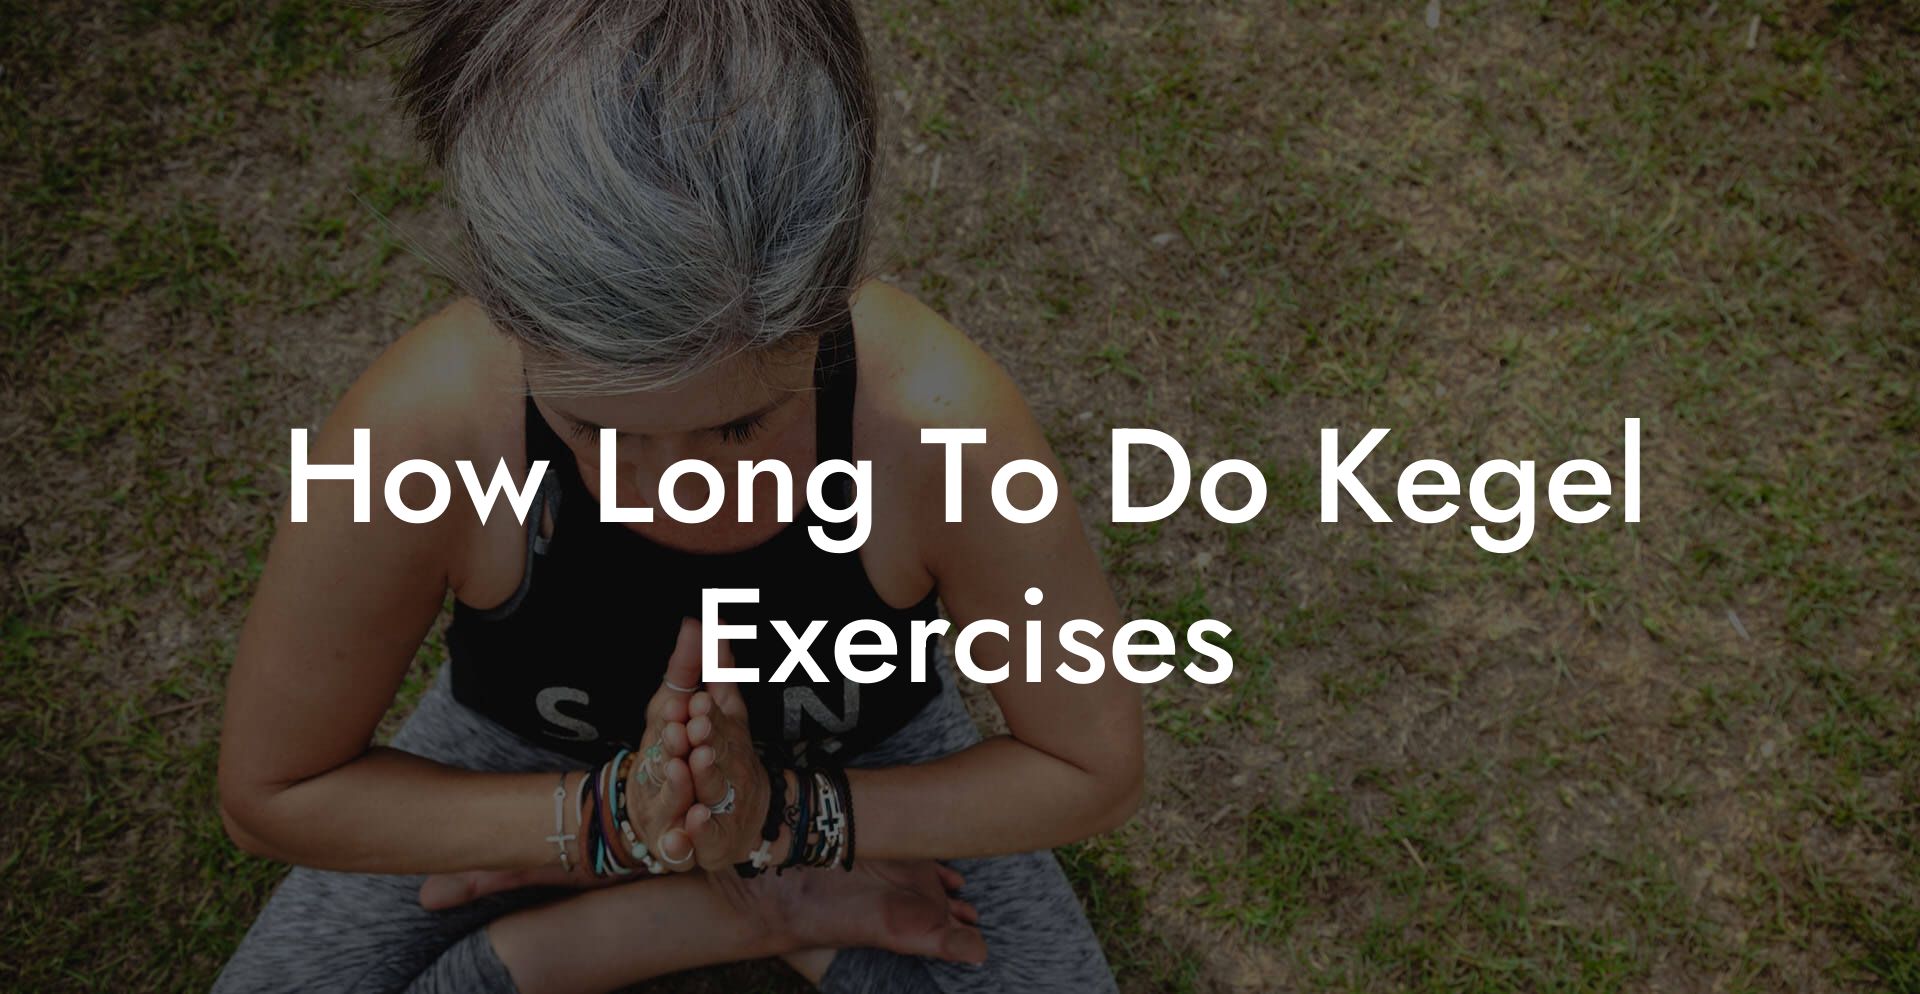 How Long To Do Kegel Exercises